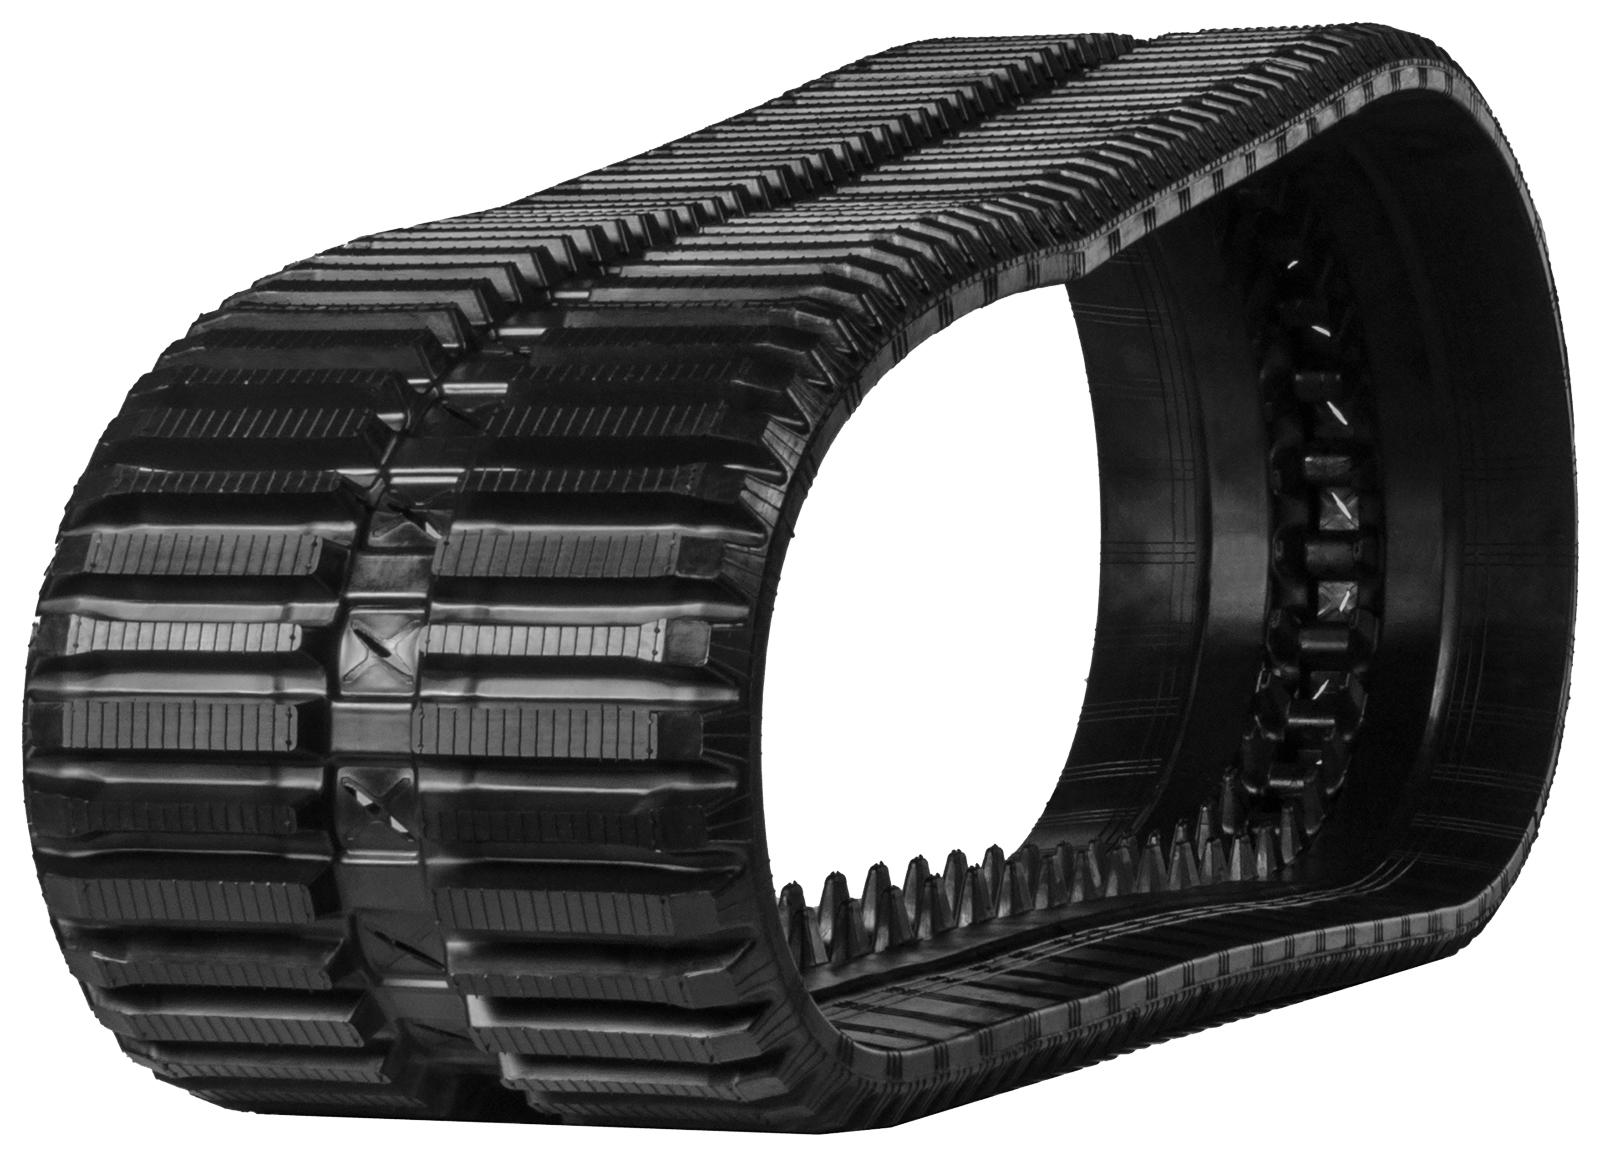 set of 2 18" heavy duty multi-bar pattern rubber track (450x86bx52)